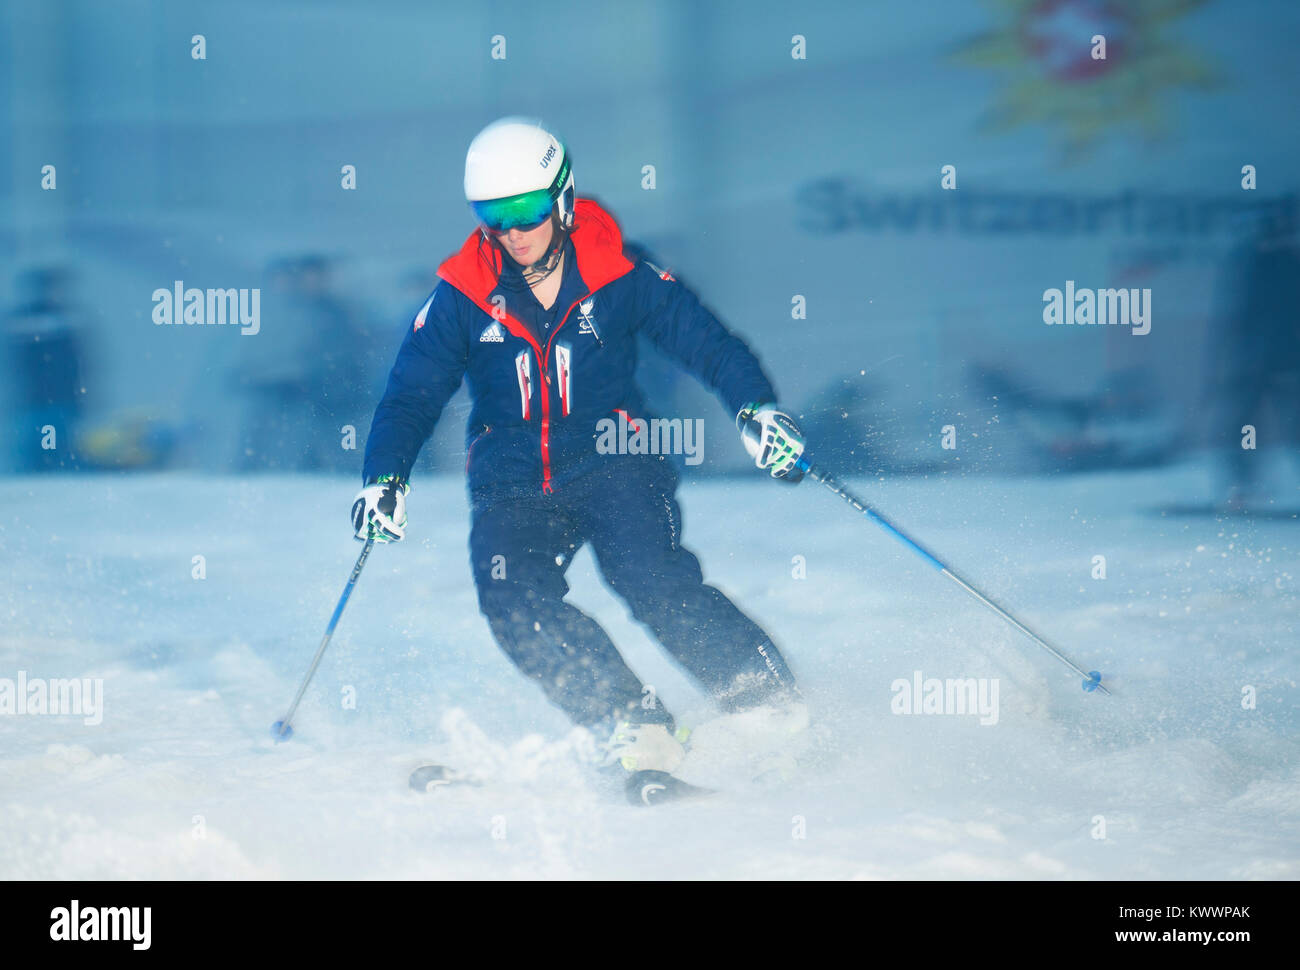 Millie skieur ParalympicsGB ParalympicsGB Chevalier pendant la Jeux Olympiques d'hiver 2018 Ski alpin et snowboard team annonce, à l'Snowcenter, Hemel Hempstead. Banque D'Images